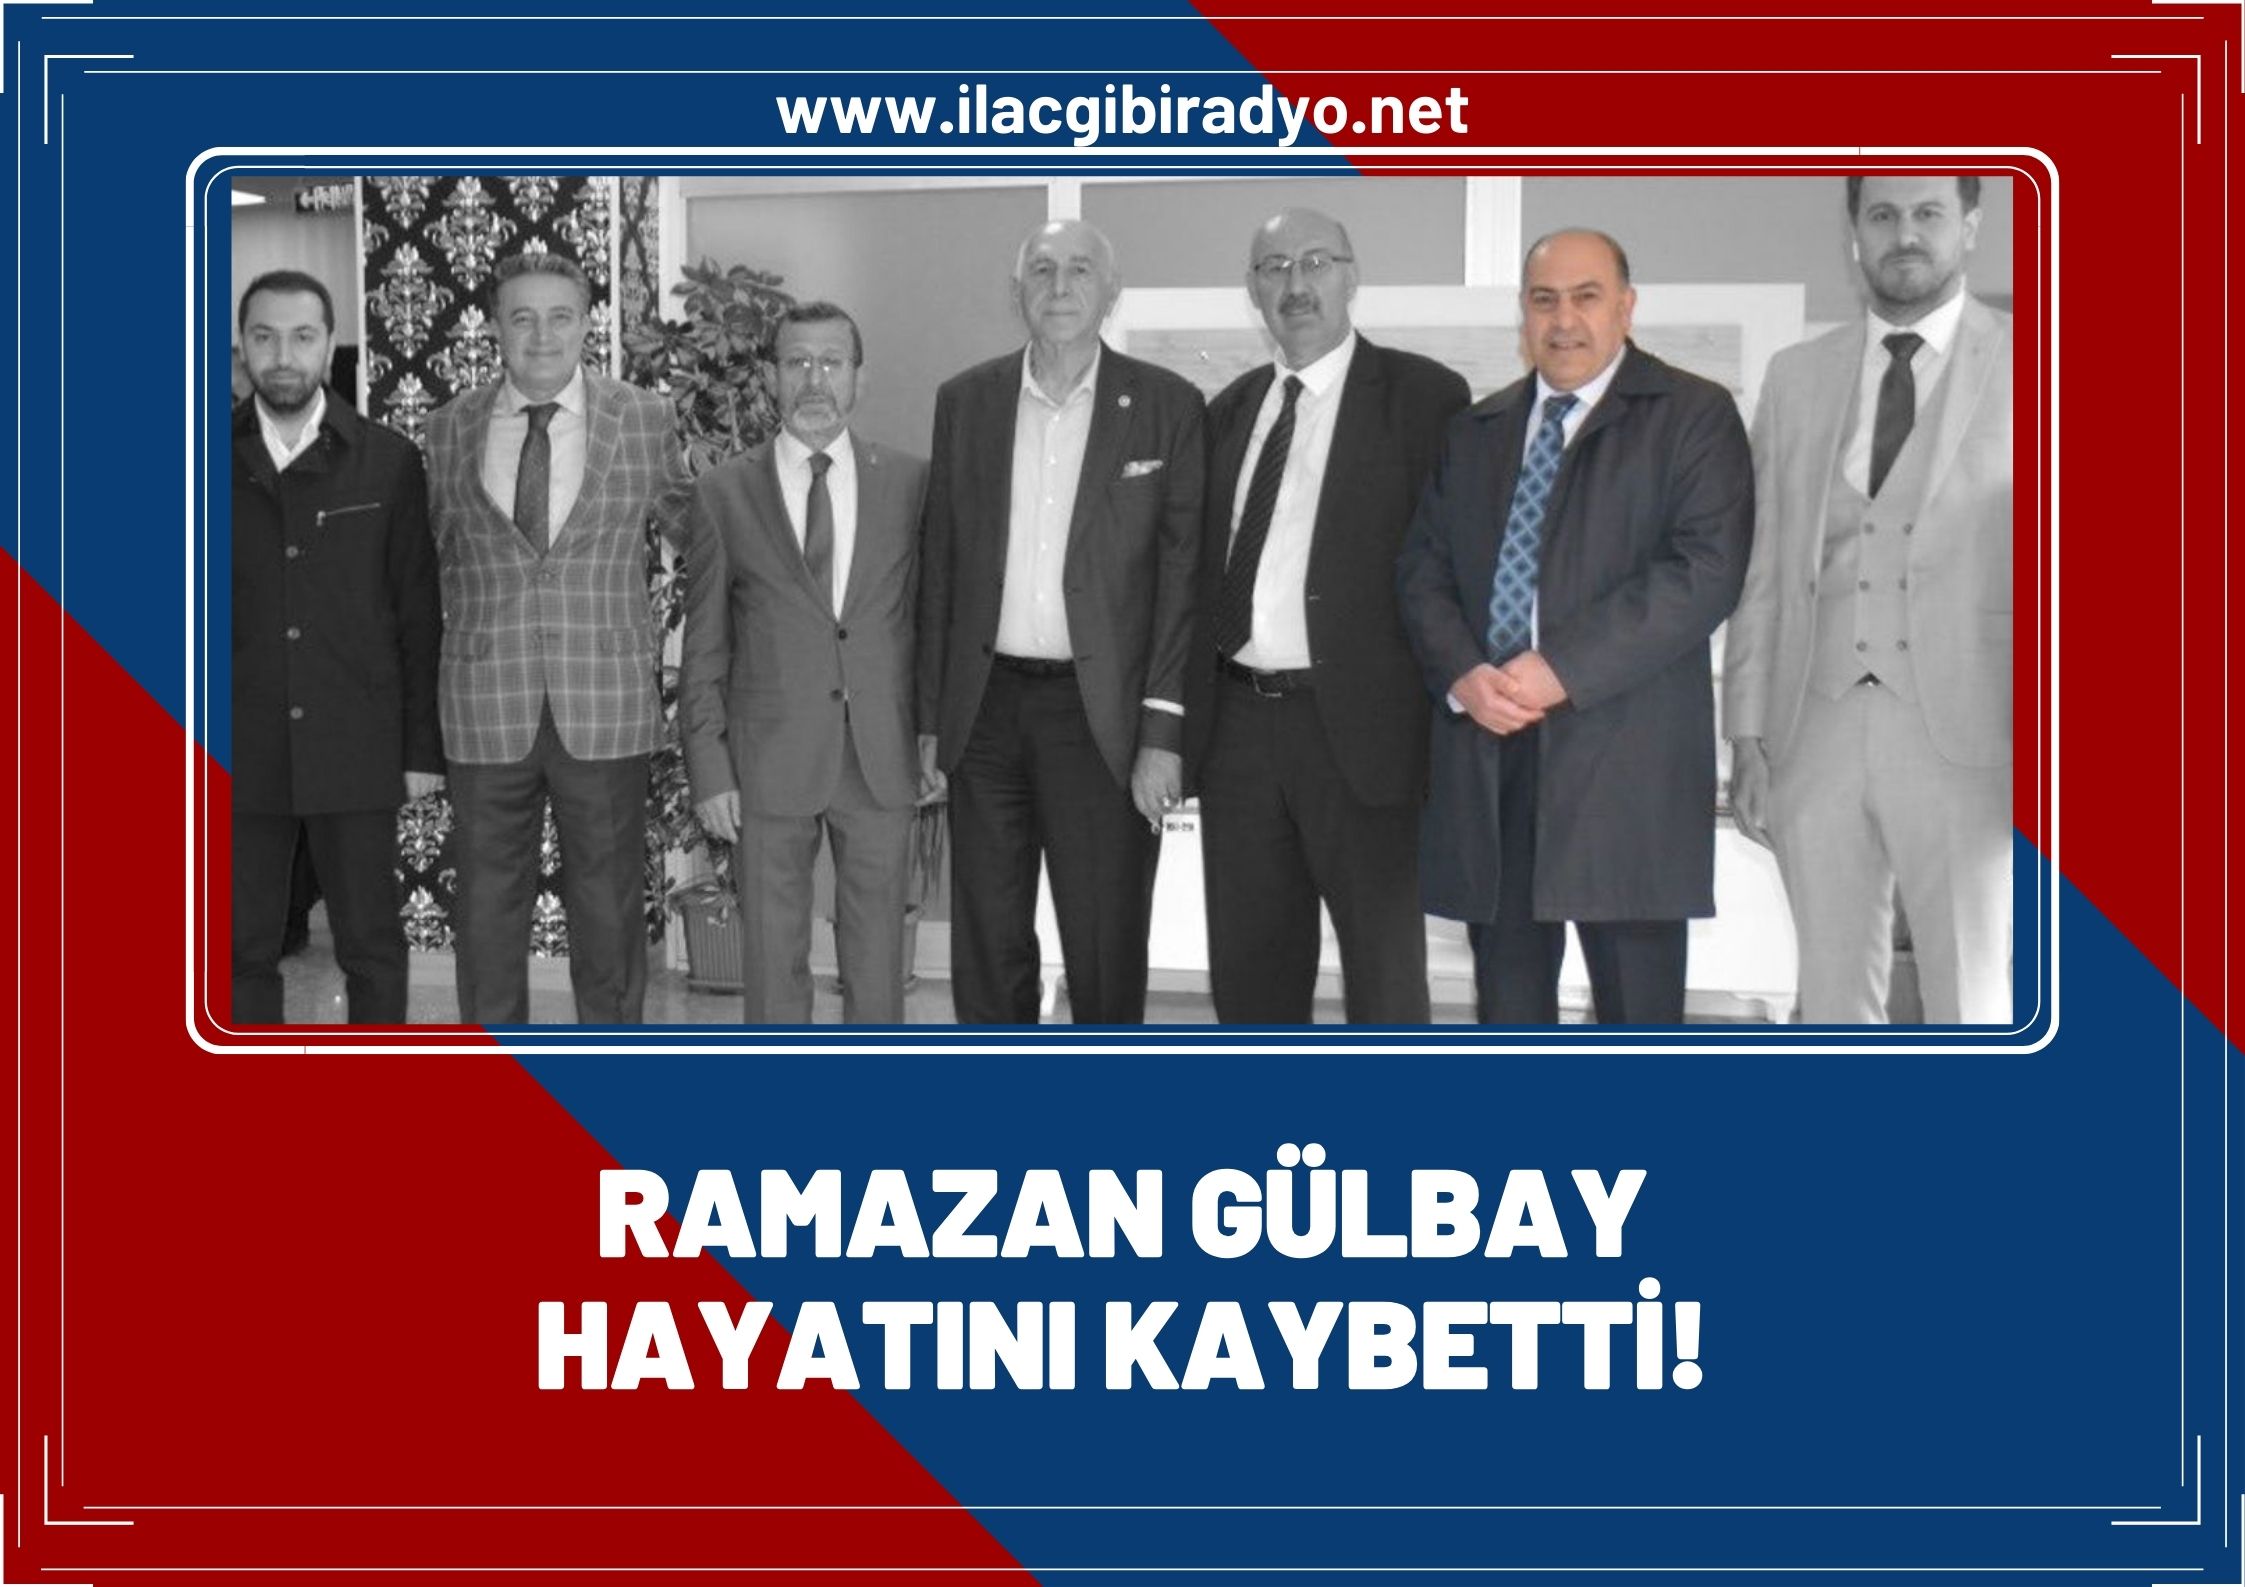 Ramazan Gülbay hayatını kaybetti!